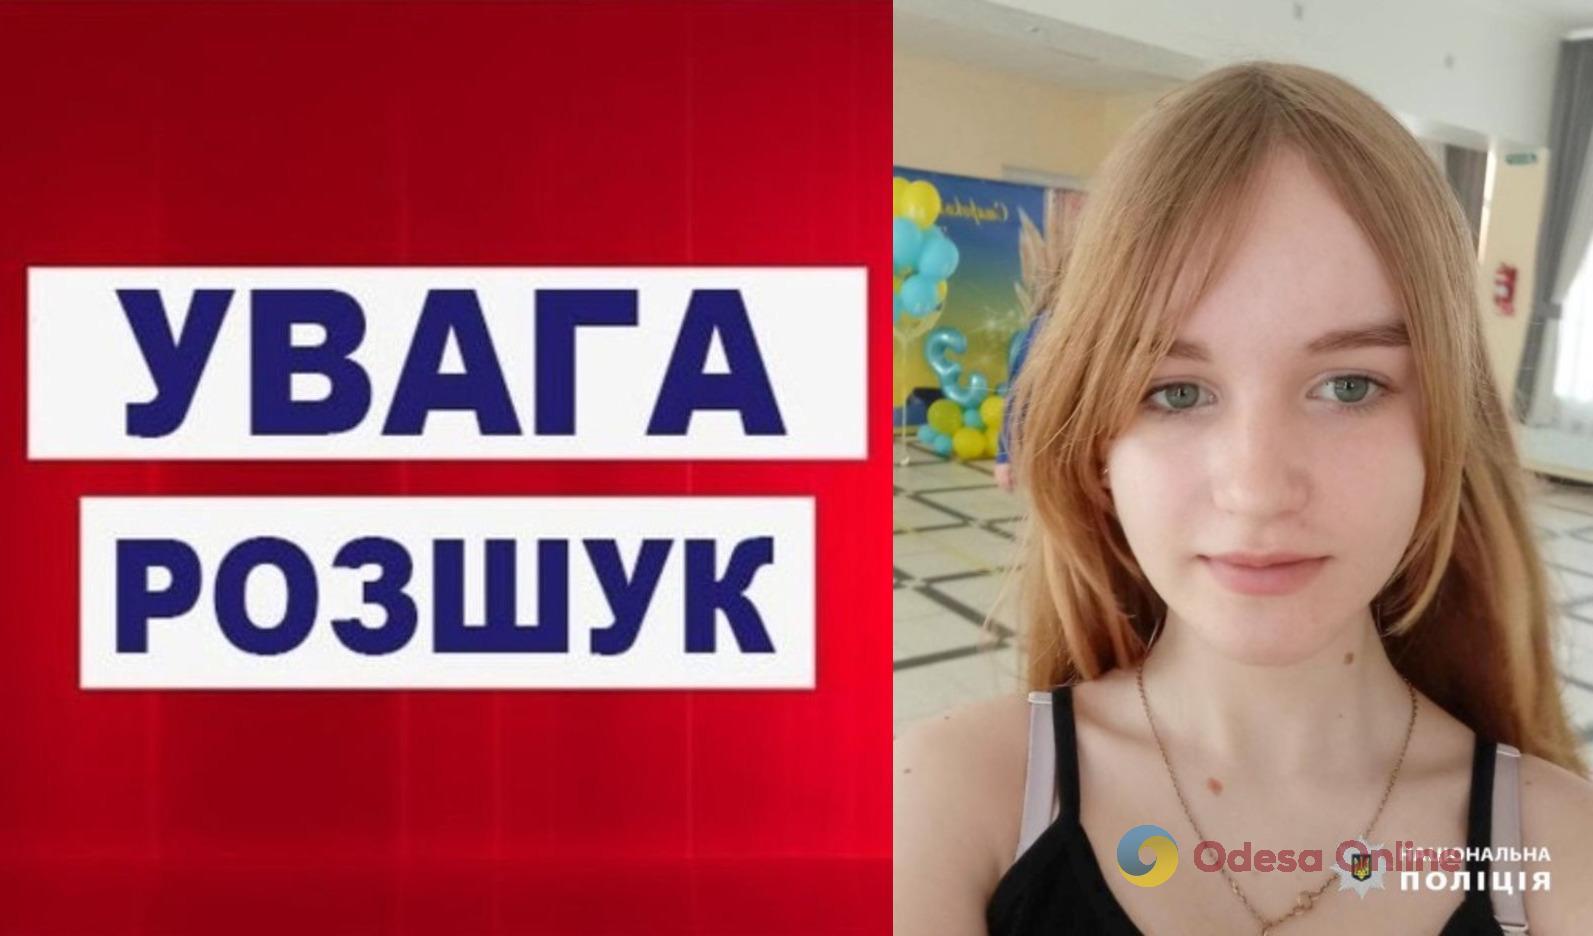 В Одесской области ищут пропавшую 13-летнюю девочку